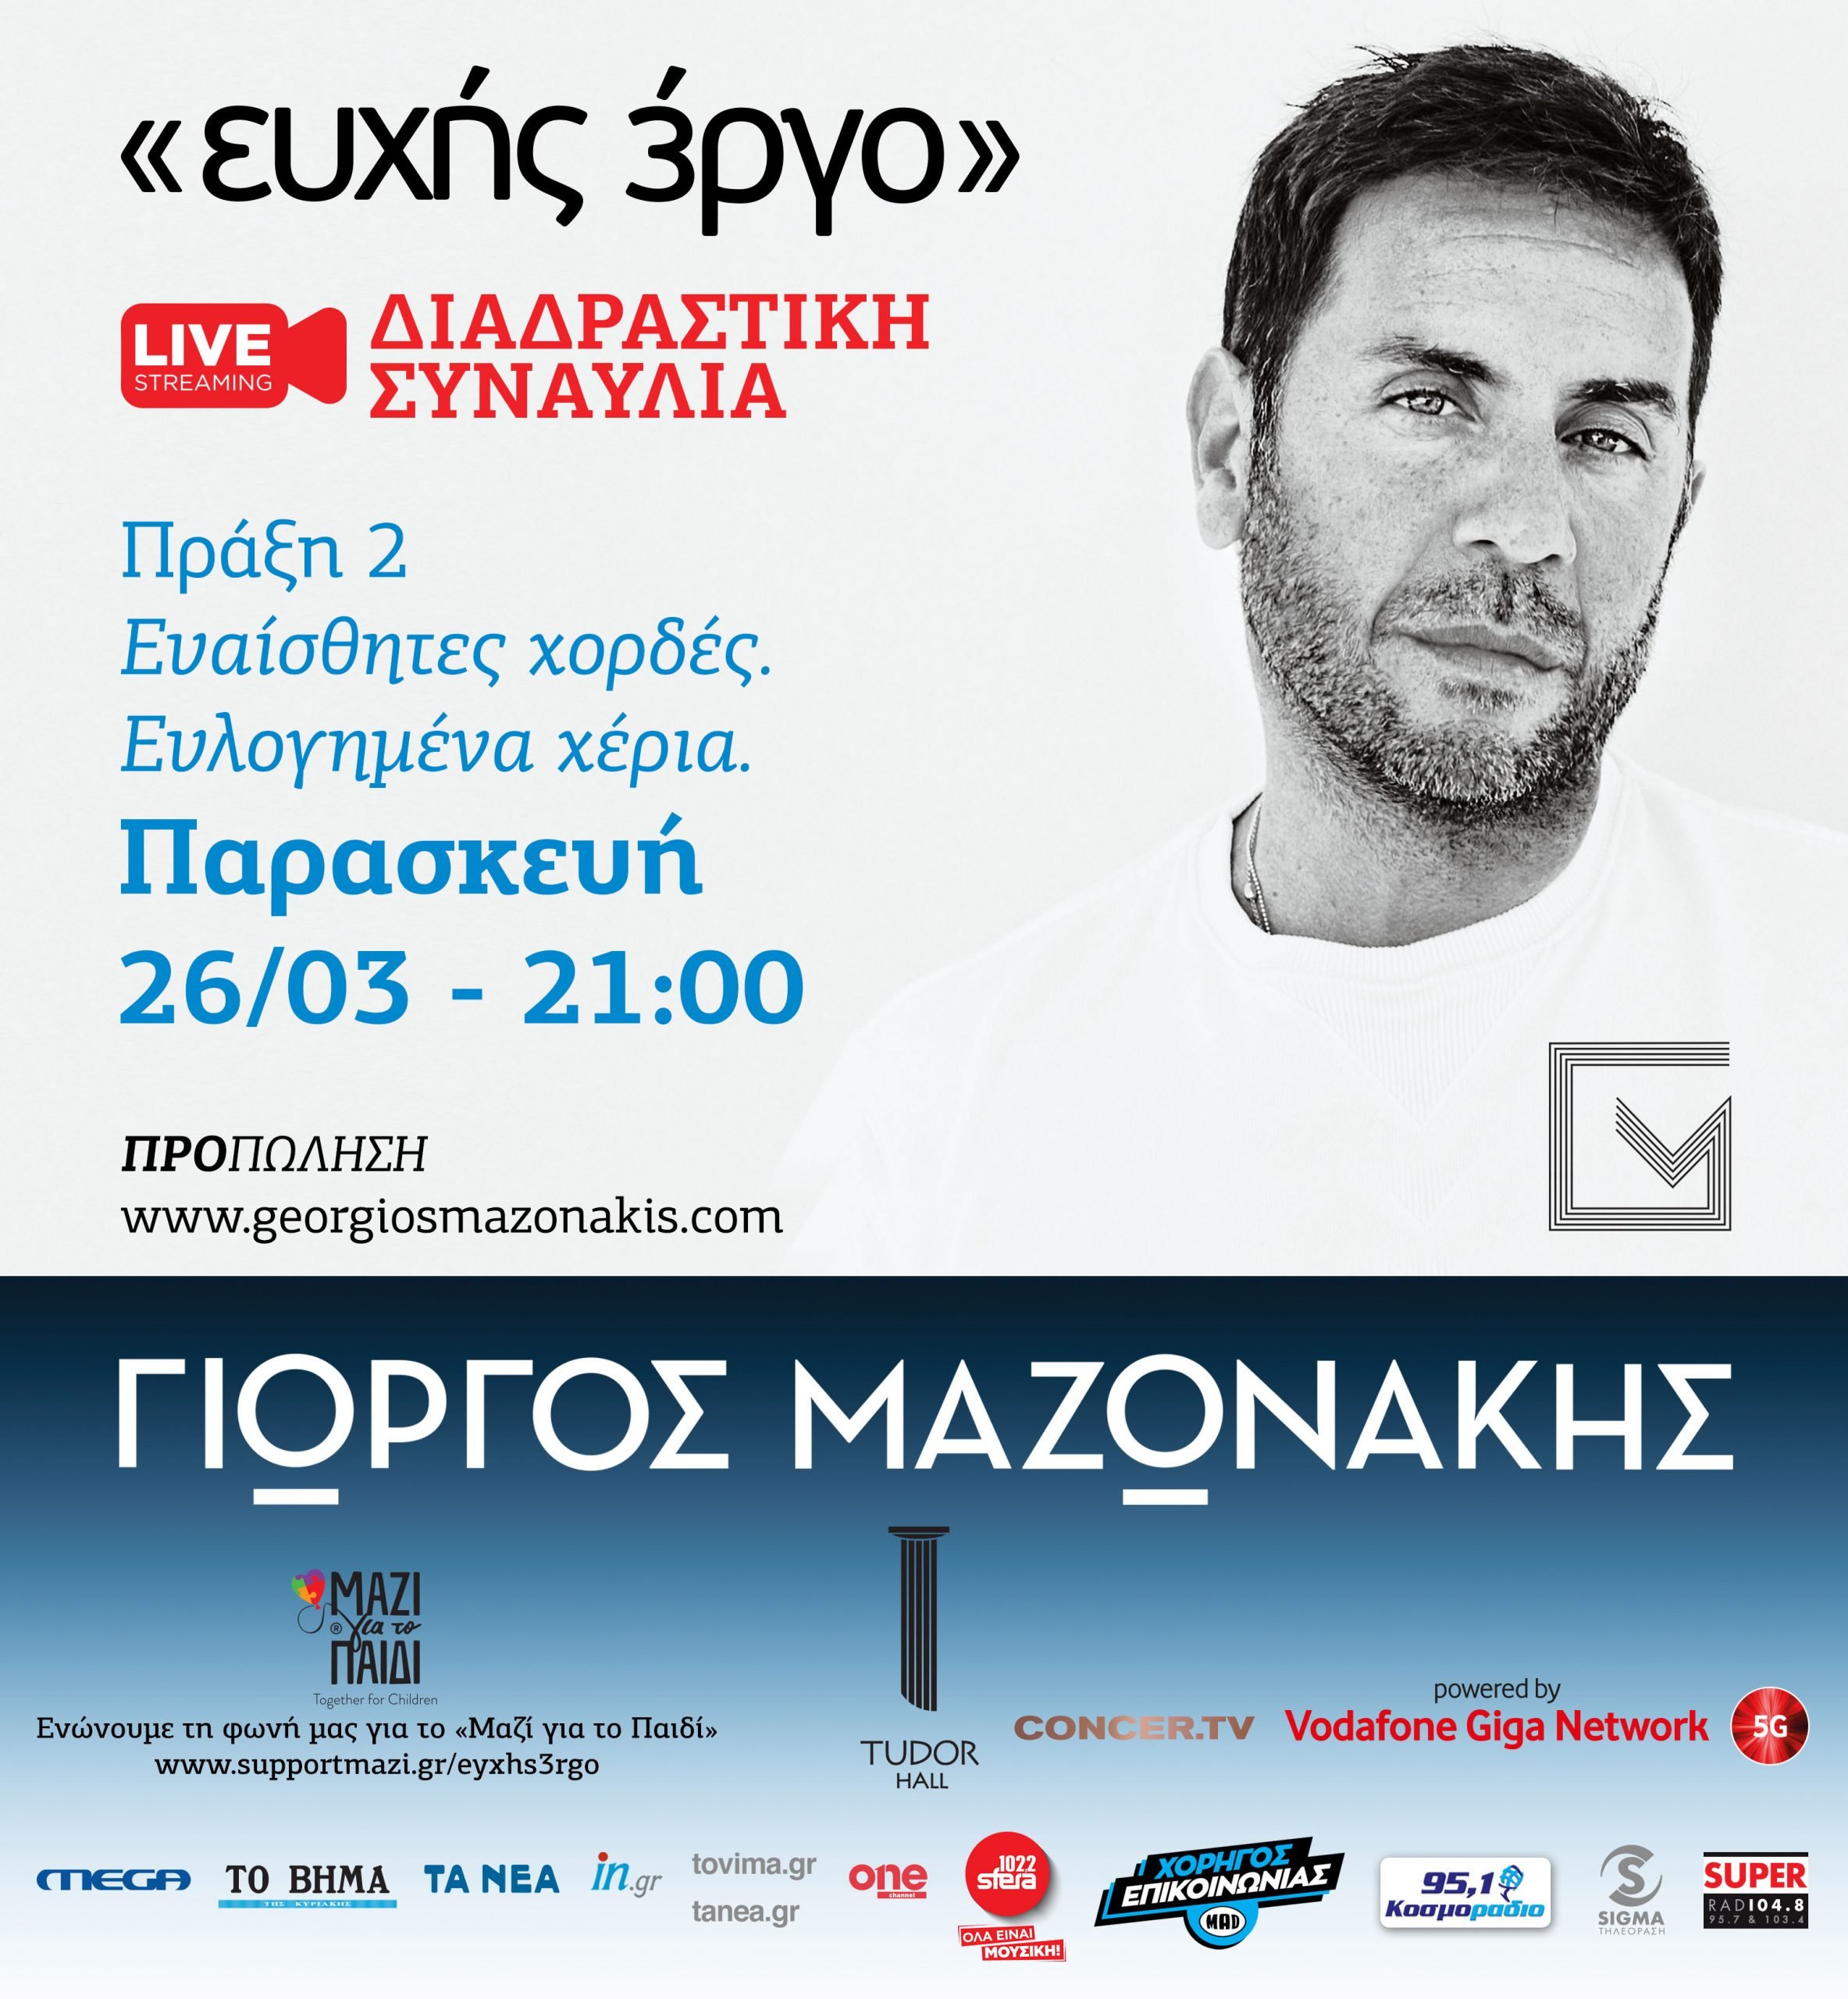 Γιώργος Μαζωνάκης live streaming, διαδραστική συναυλία